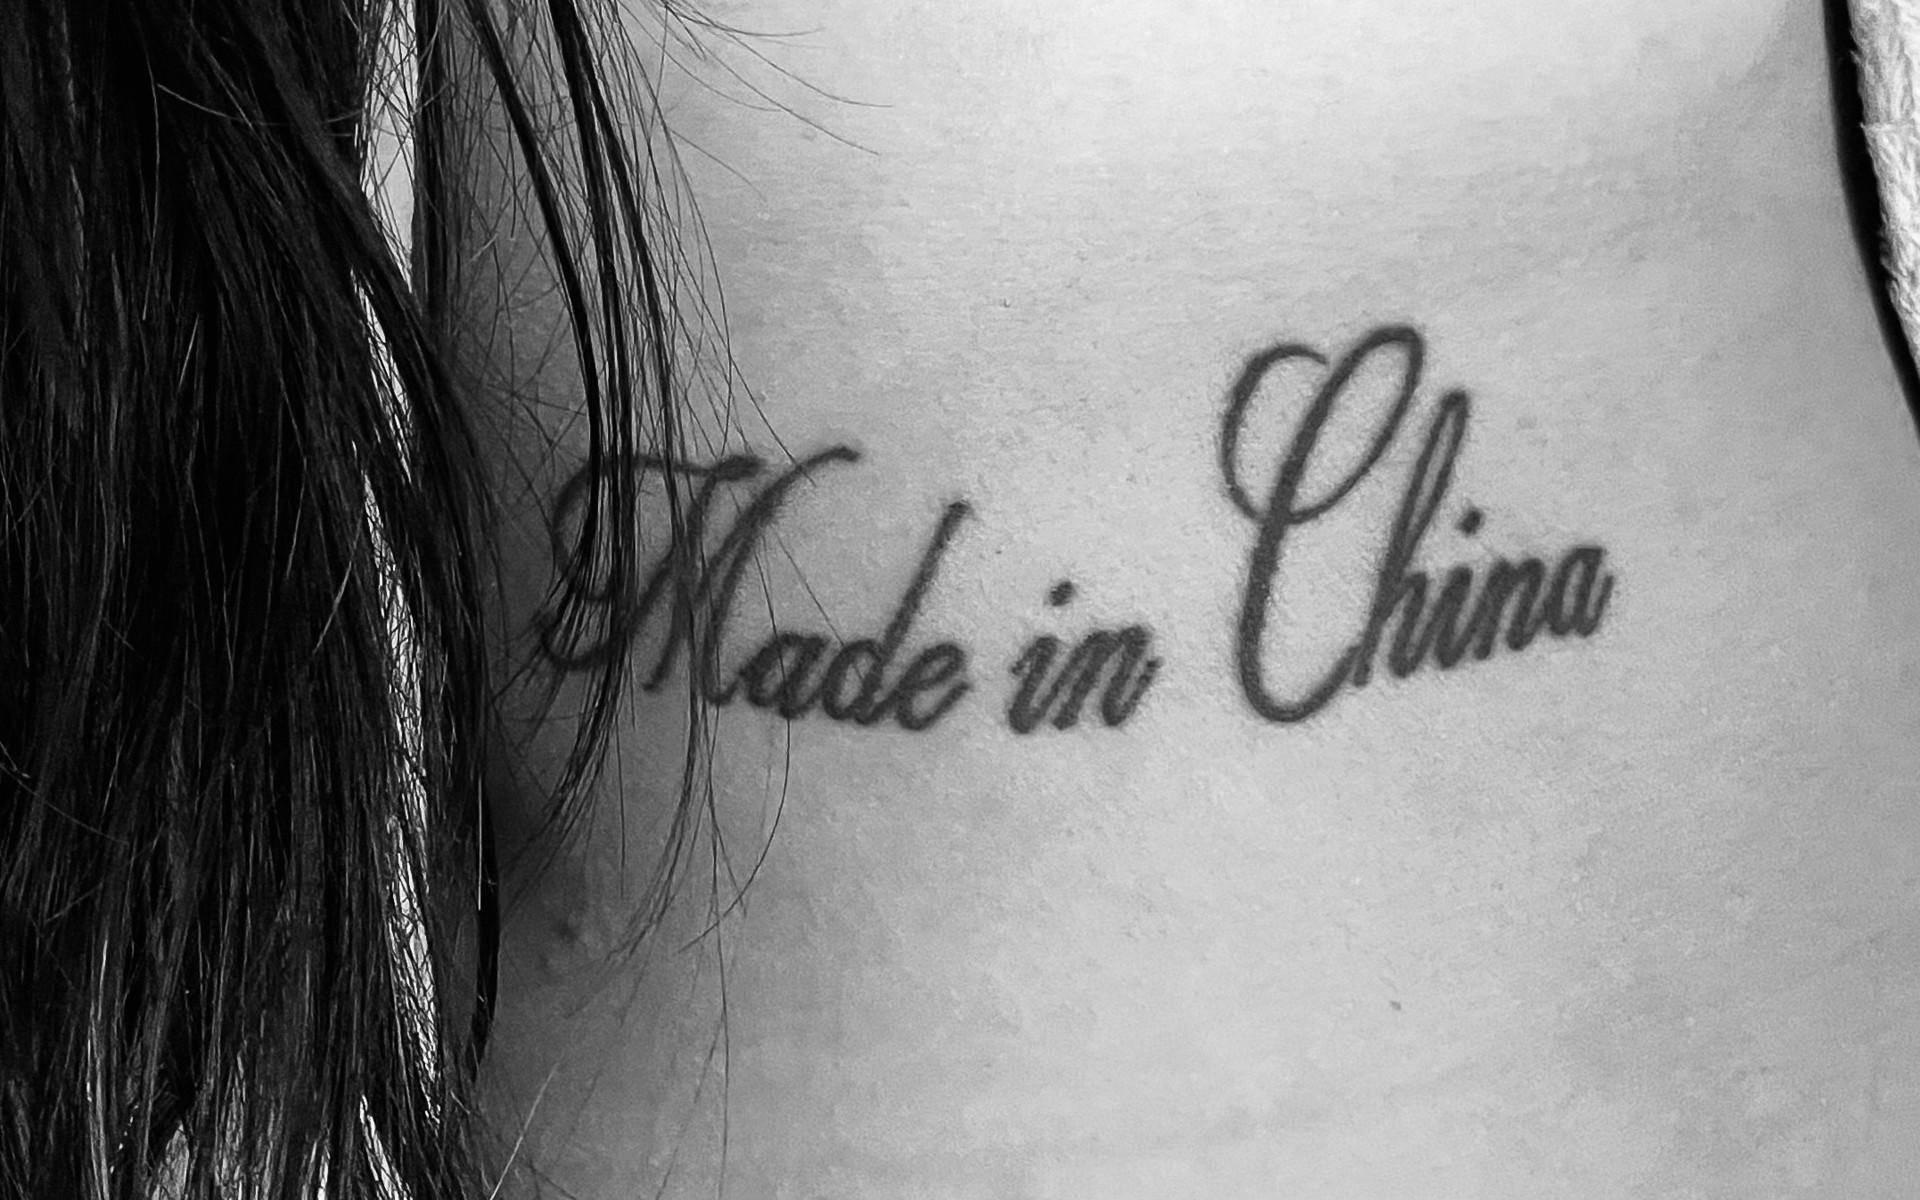 ”Jag kommer ifrån Kina. Jag har flera gånger fått skämtsamma kommentarer om att jag är ”made in China”, vilket gav mig idén till denna tatuering. Mitt ursprung är inget jag skäms över och ibland måste man ta skämtsamma kommentarer med en klackspark”, skriver Alice Andersson.